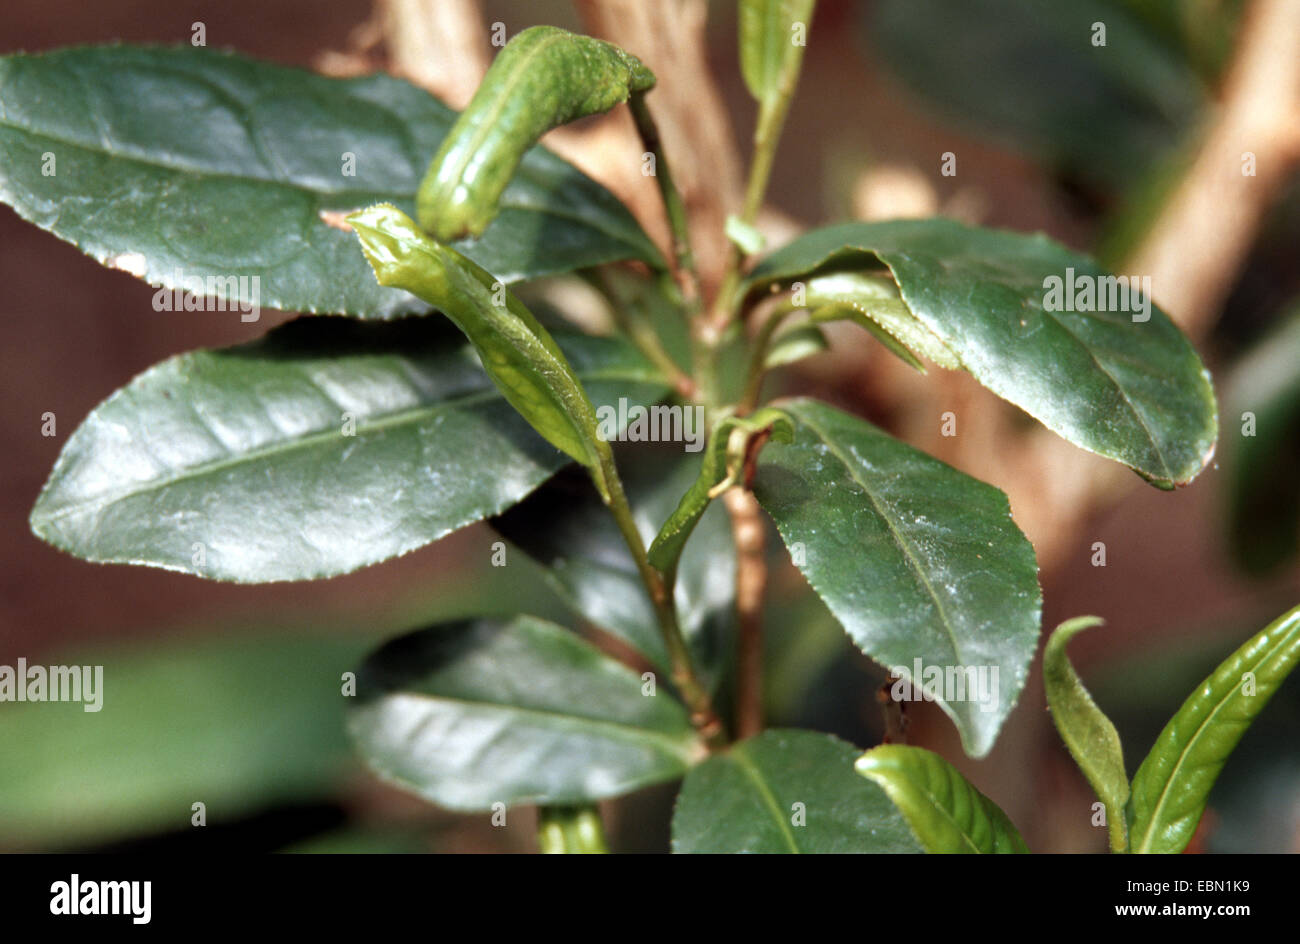 Amplio (Polyphagotarsonemus latus, ácaro Tarsonemus latus, Hemitarsonemus latus), parásitos en la planta de té, Camellia sinensis, daños Foto de stock